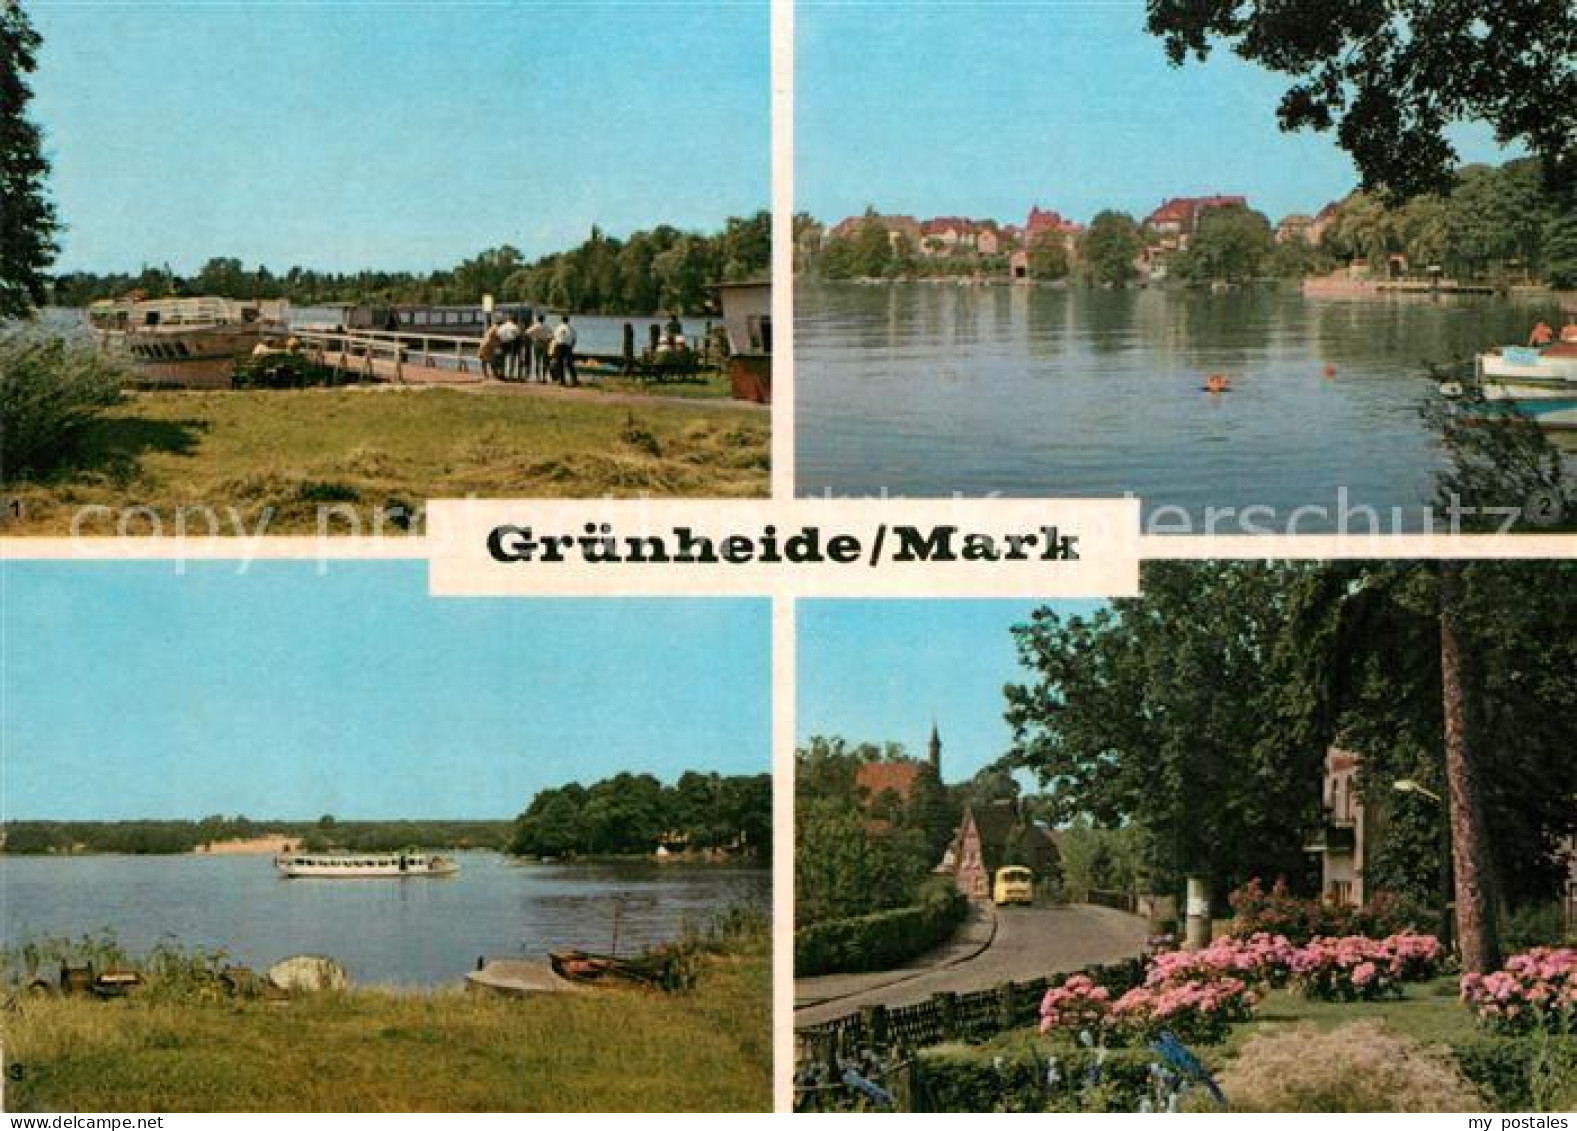 72935184 Gruenheide Mark Altbuchhaus Anlegestelle Peetzsee Werlsee Gr?nheide Gru - Gruenheide